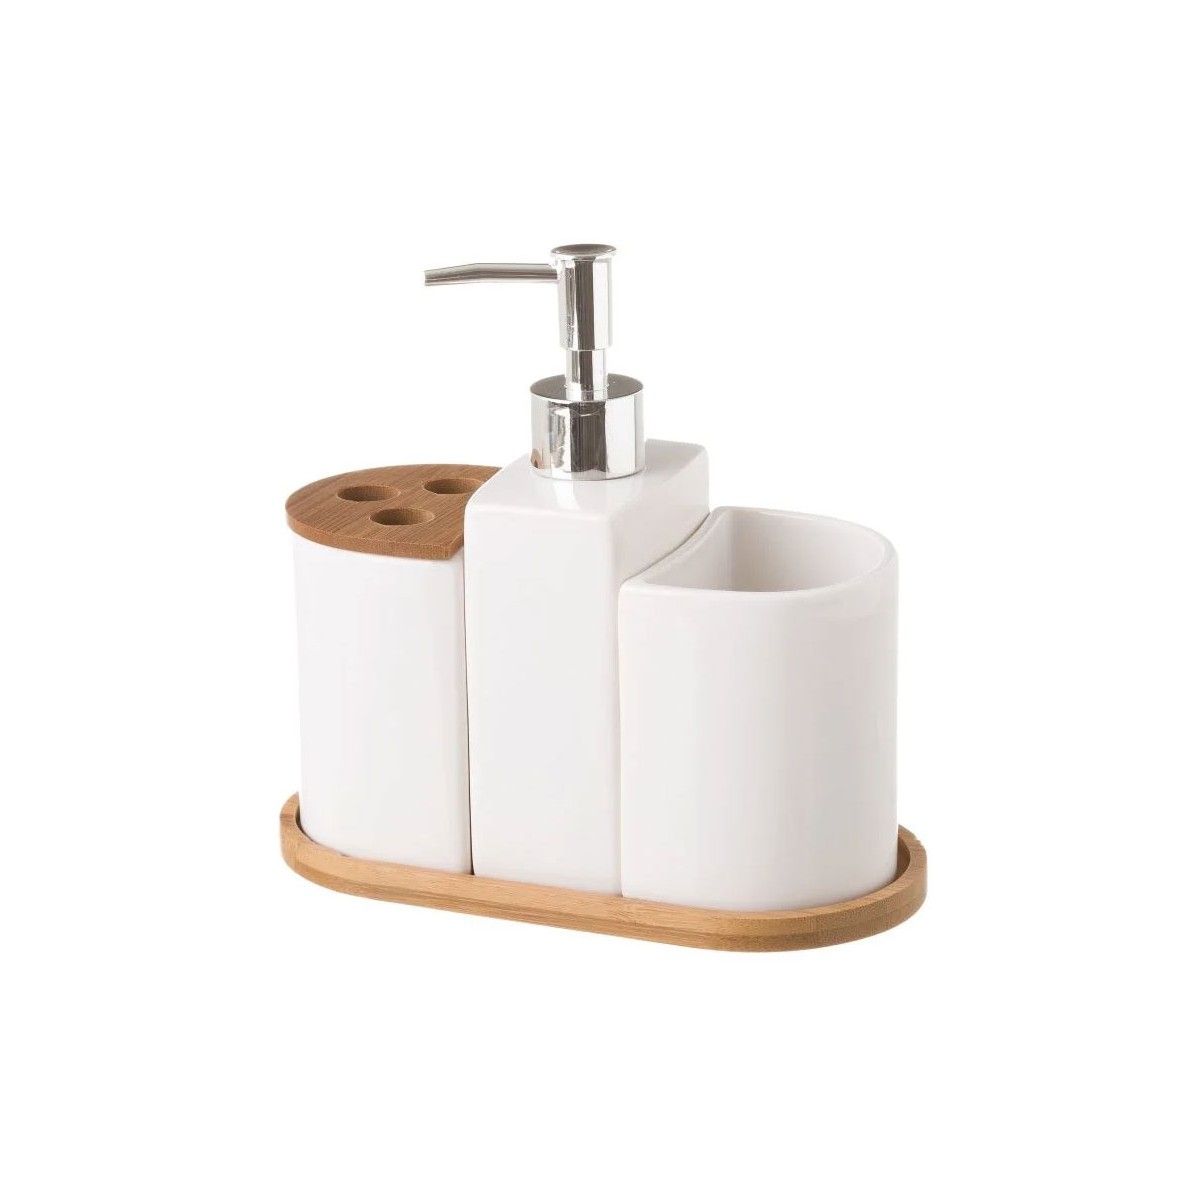 Relaxdays Accessoires salle de bain bambou céramique Set 4 pièces  distributeur savon gobelet brosse à dent, nature blanc